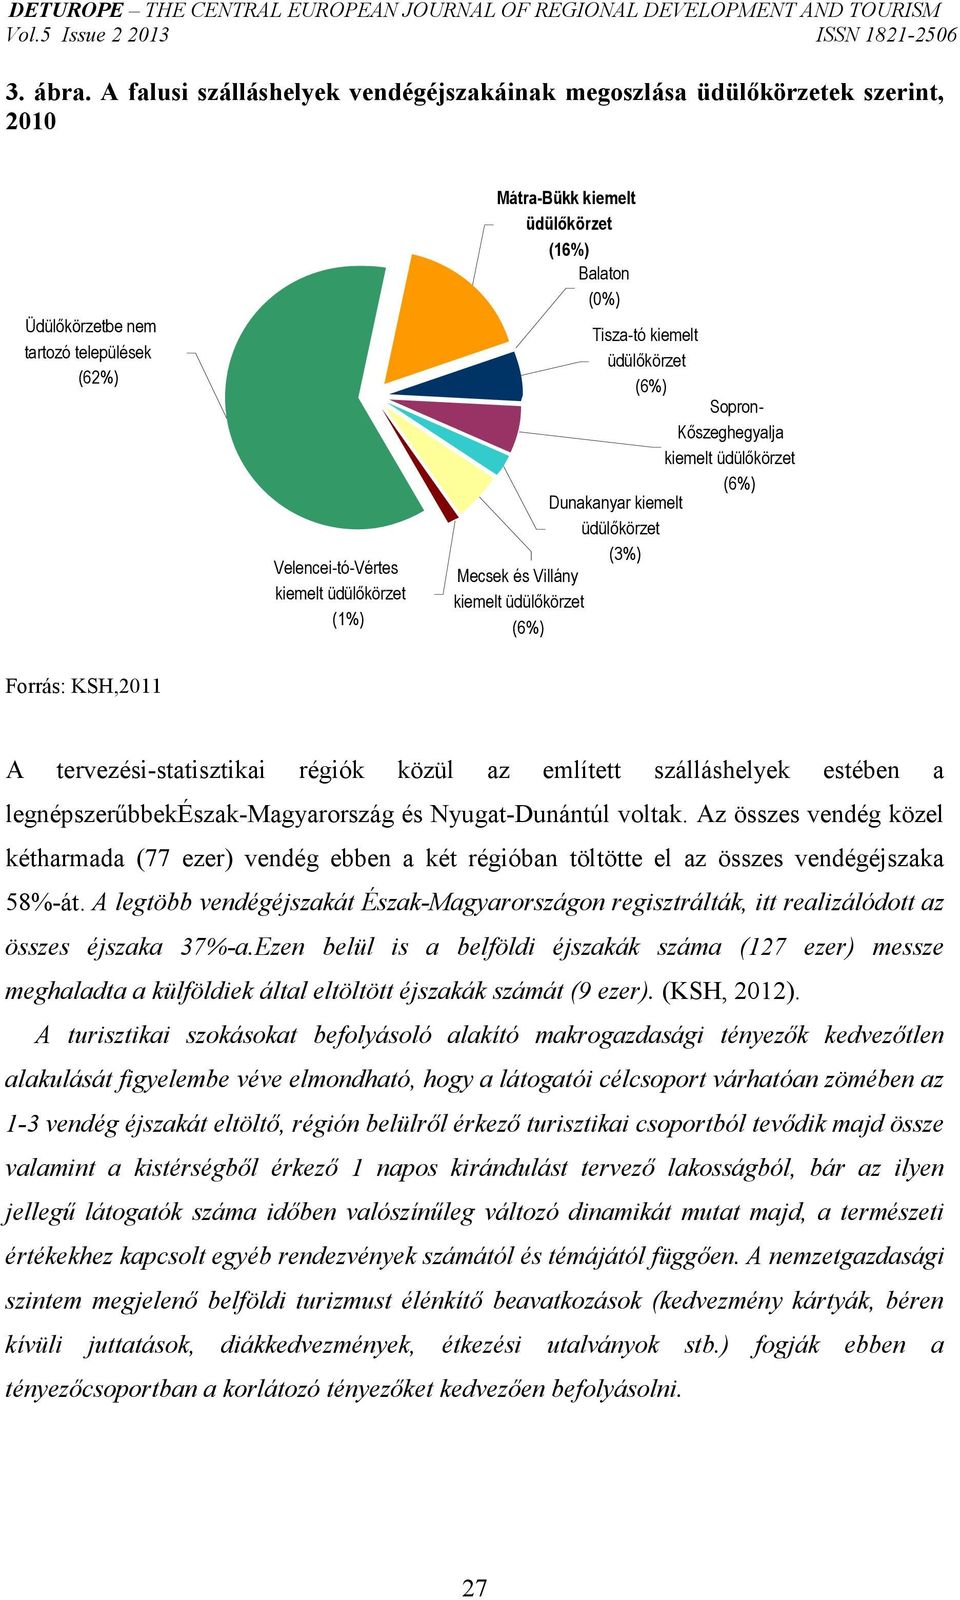 (16%) Balaton (0%) Tisza-tó kiemelt üdülıkörzet (6%) Sopron- Kıszeghegyalja kiemelt üdülıkörzet (6%) Dunakanyar kiemelt üdülıkörzet (3%) Mecsek és Villány kiemelt üdülıkörzet (6%) Forrás: KSH,2011 A